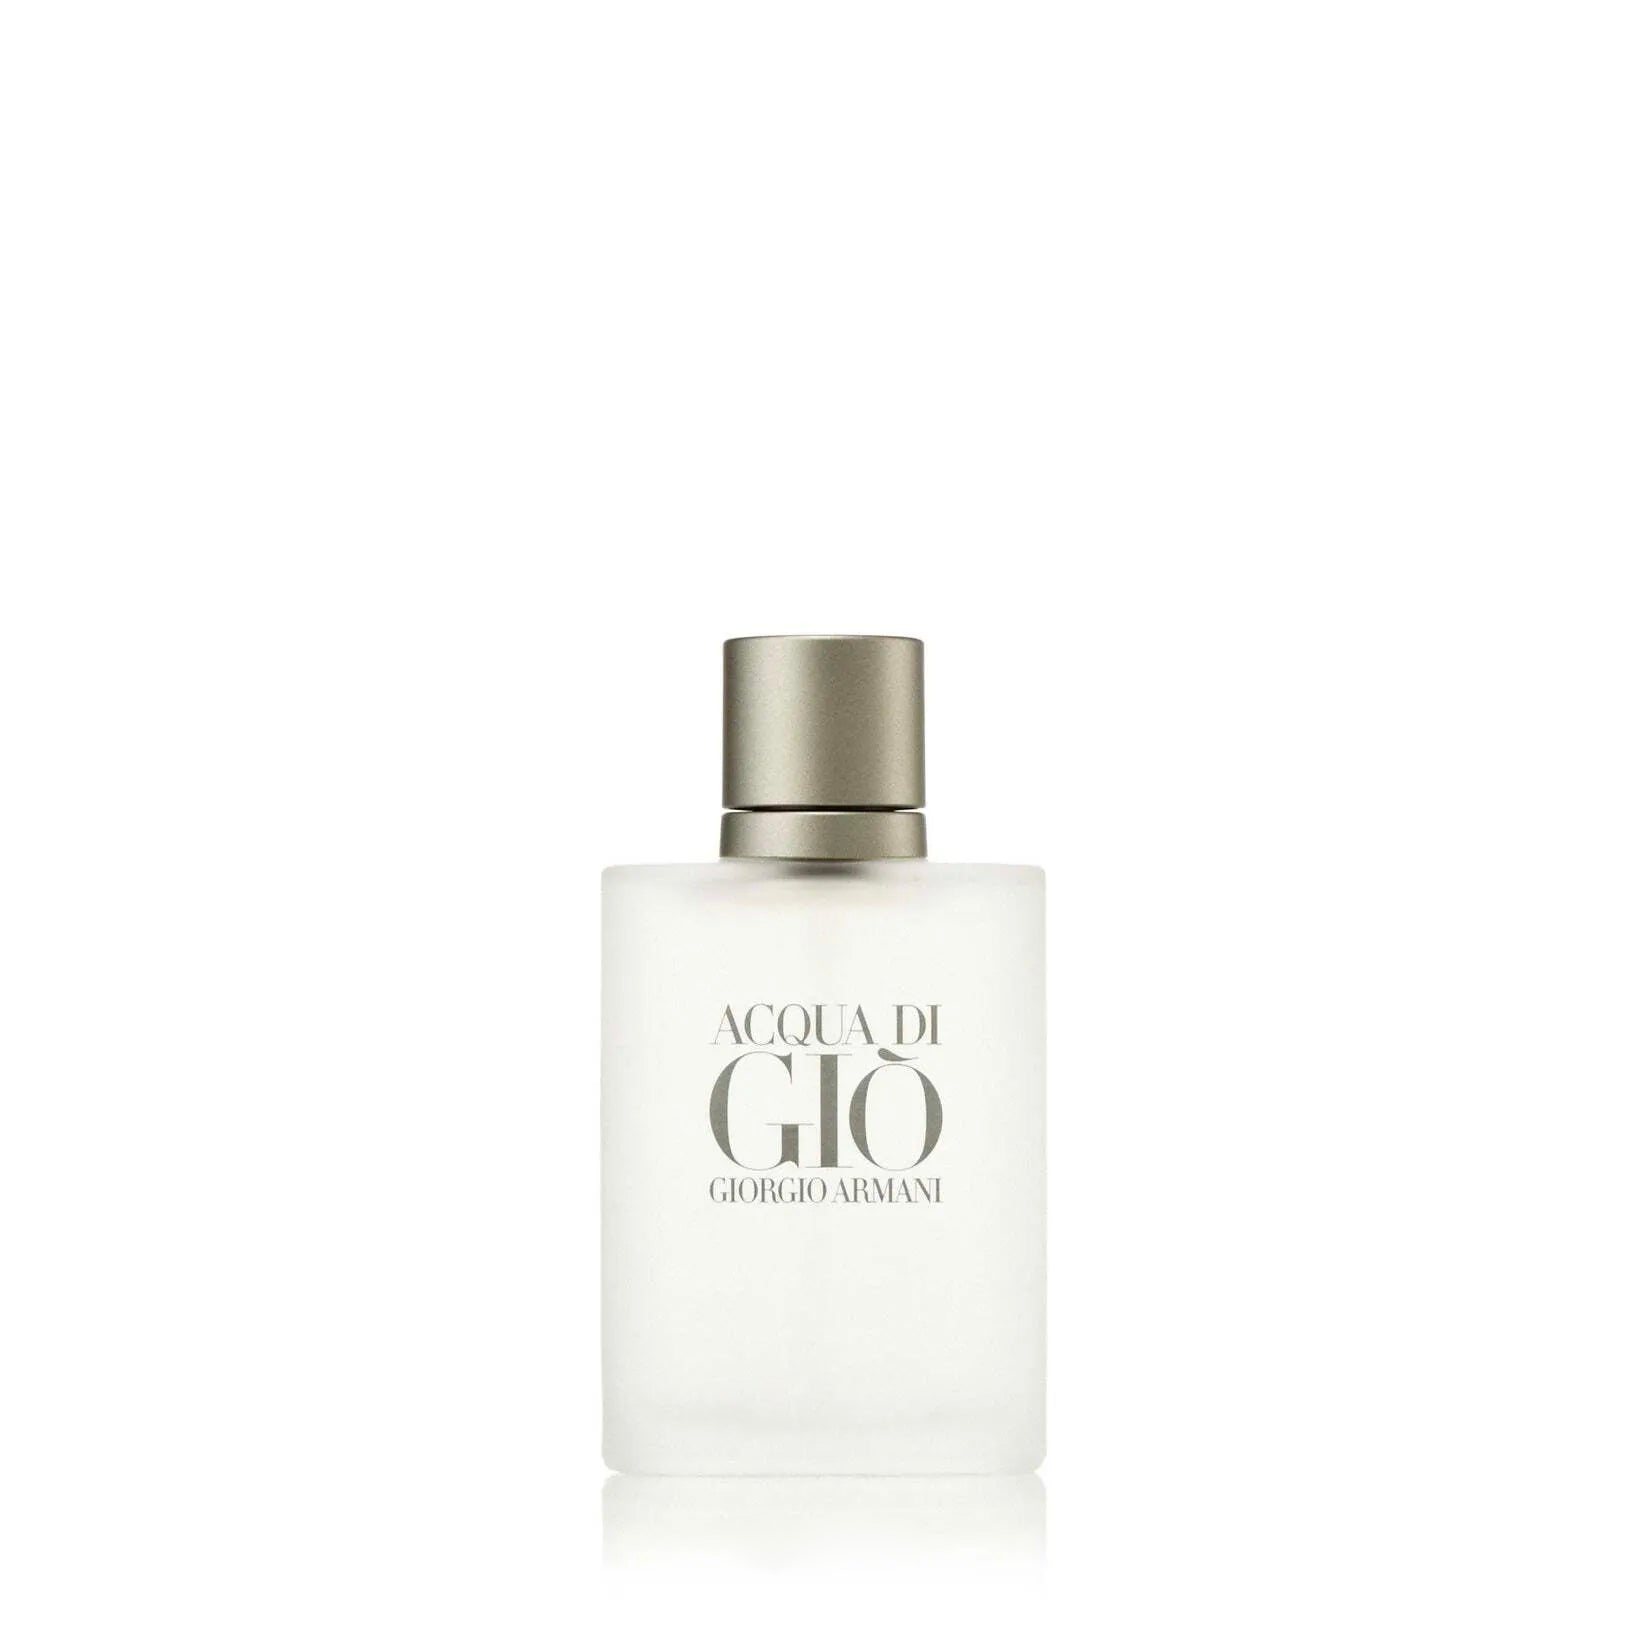 Acqua Di Gio Eau de Toilette Spray for Men by Giorgio Armani, Product image 4